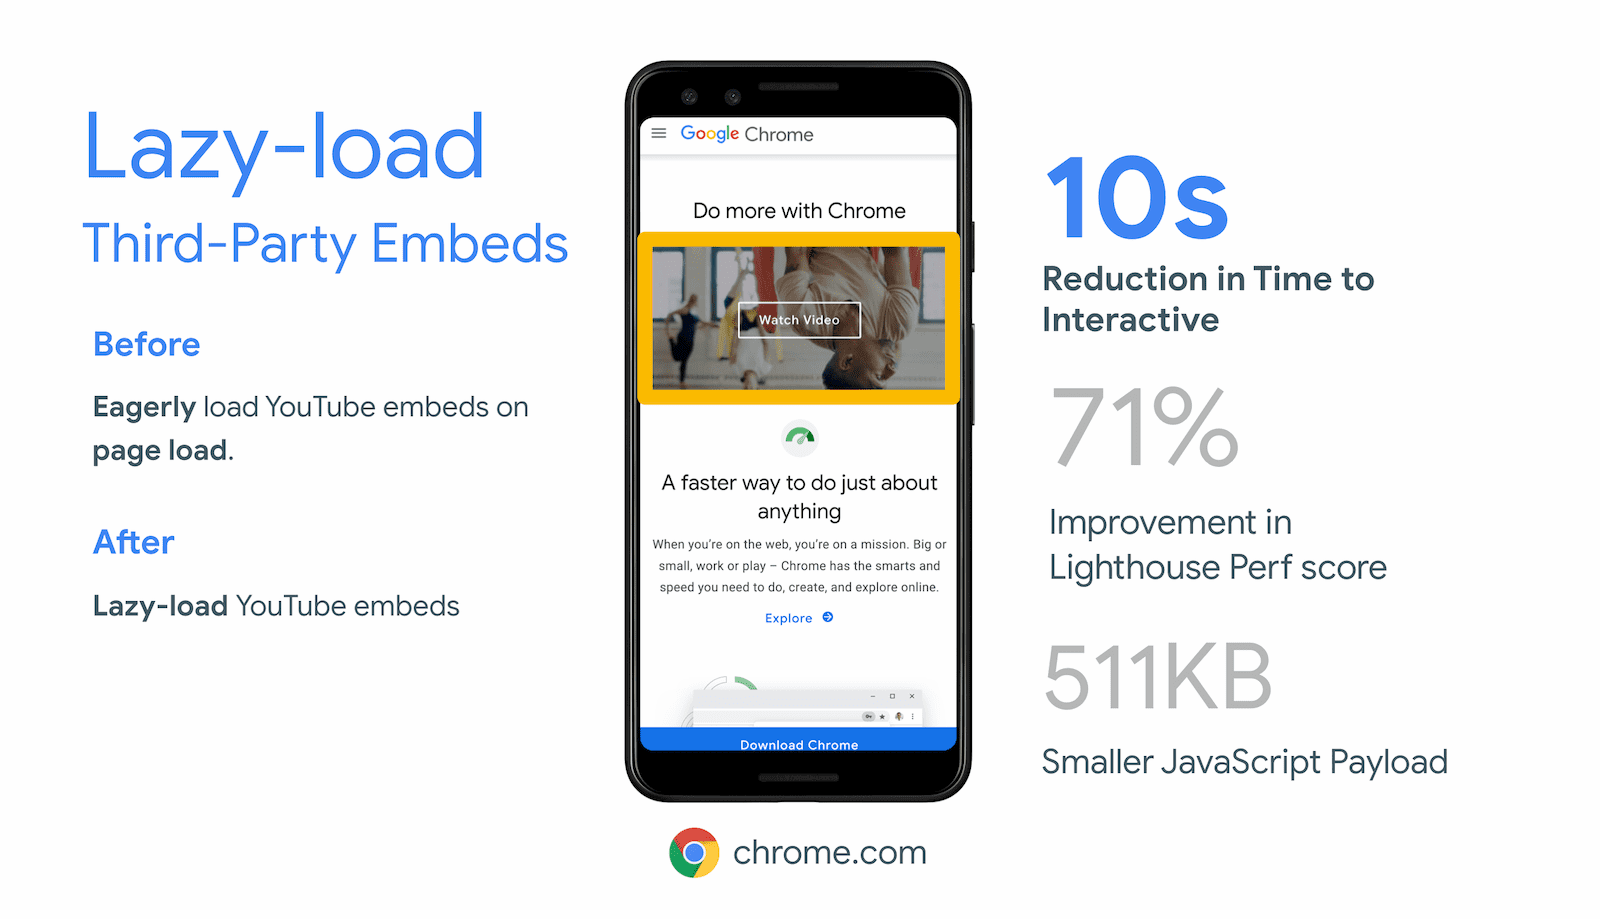 Chrome.com добился сокращения времени взаимодействия на 10 секунд за счет ленивой загрузки закадровых iframe для встраивания видео на YouTube.